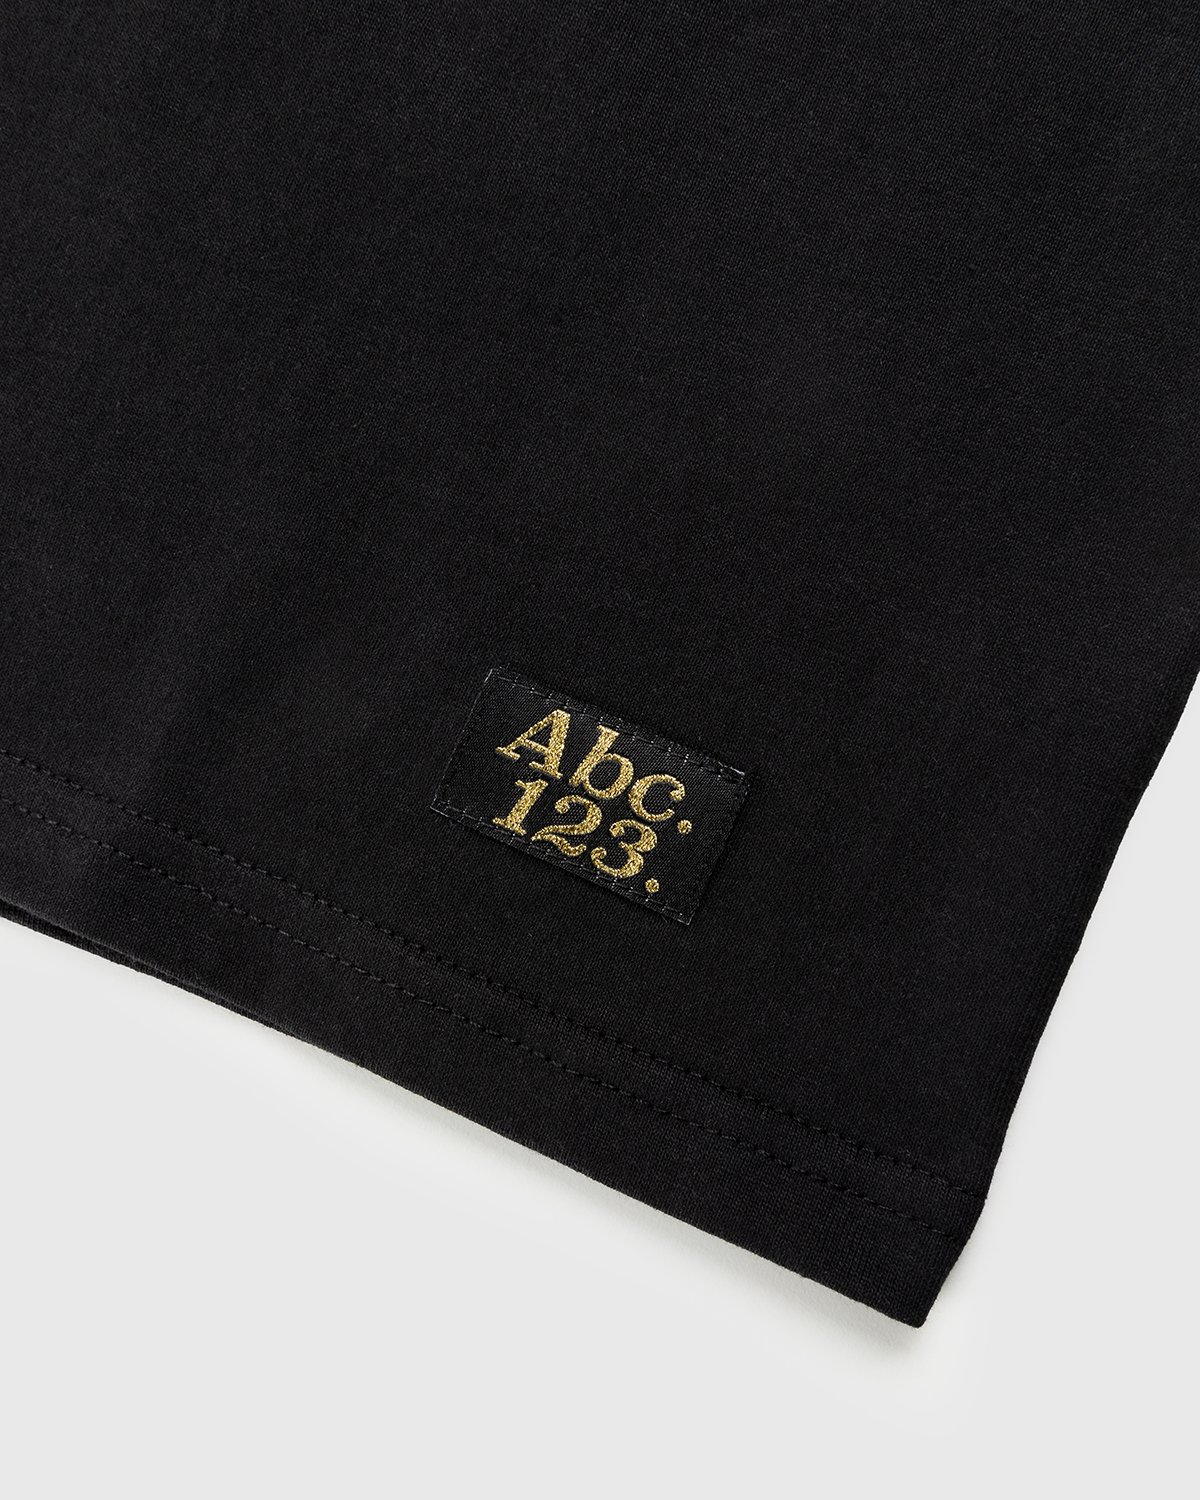 Abc. - Short-Sleeve Pocket Tee Anthracite - Clothing - Black - Image 6